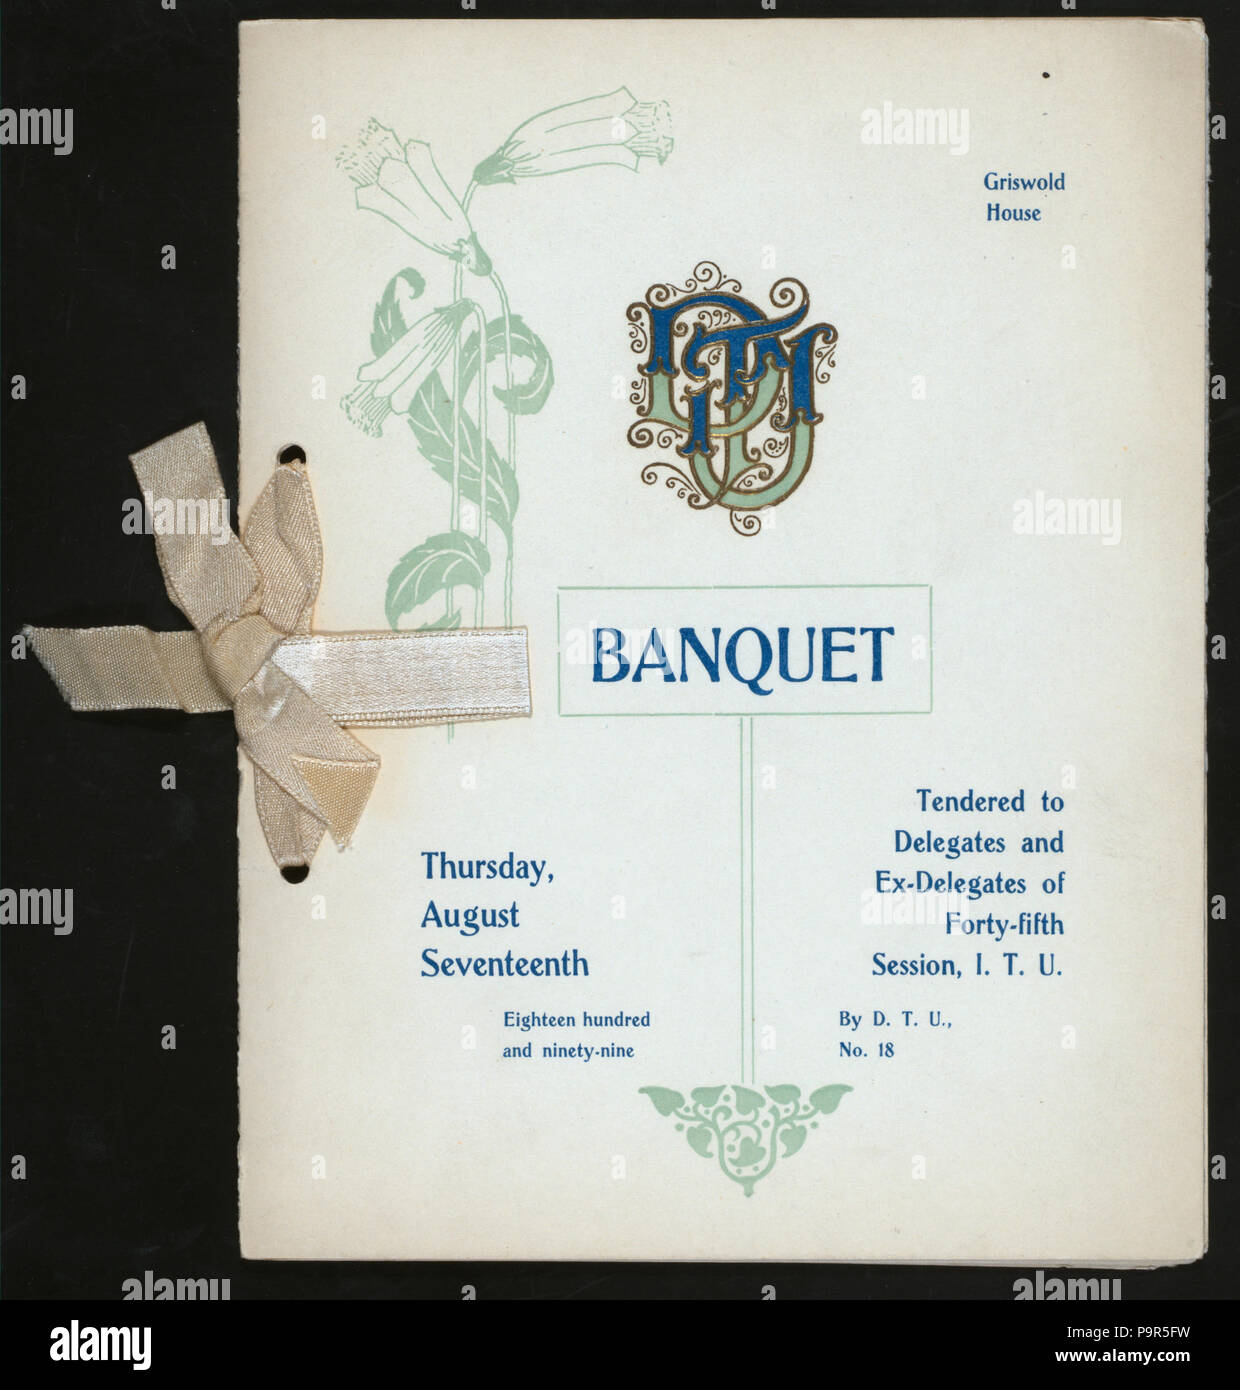 182 DÉLÉGUÉS DE BANQUET ET EX-DÉLÉGUÉS DE LA 45E SESSION,I.T.U. (Organisé par) D.T.U. NO.18 (at) "GRISWOLD, CHAMBRE(DETROIT,MICH)" (hôtel ;) (NYPL Hadès-271767-467927) Banque D'Images